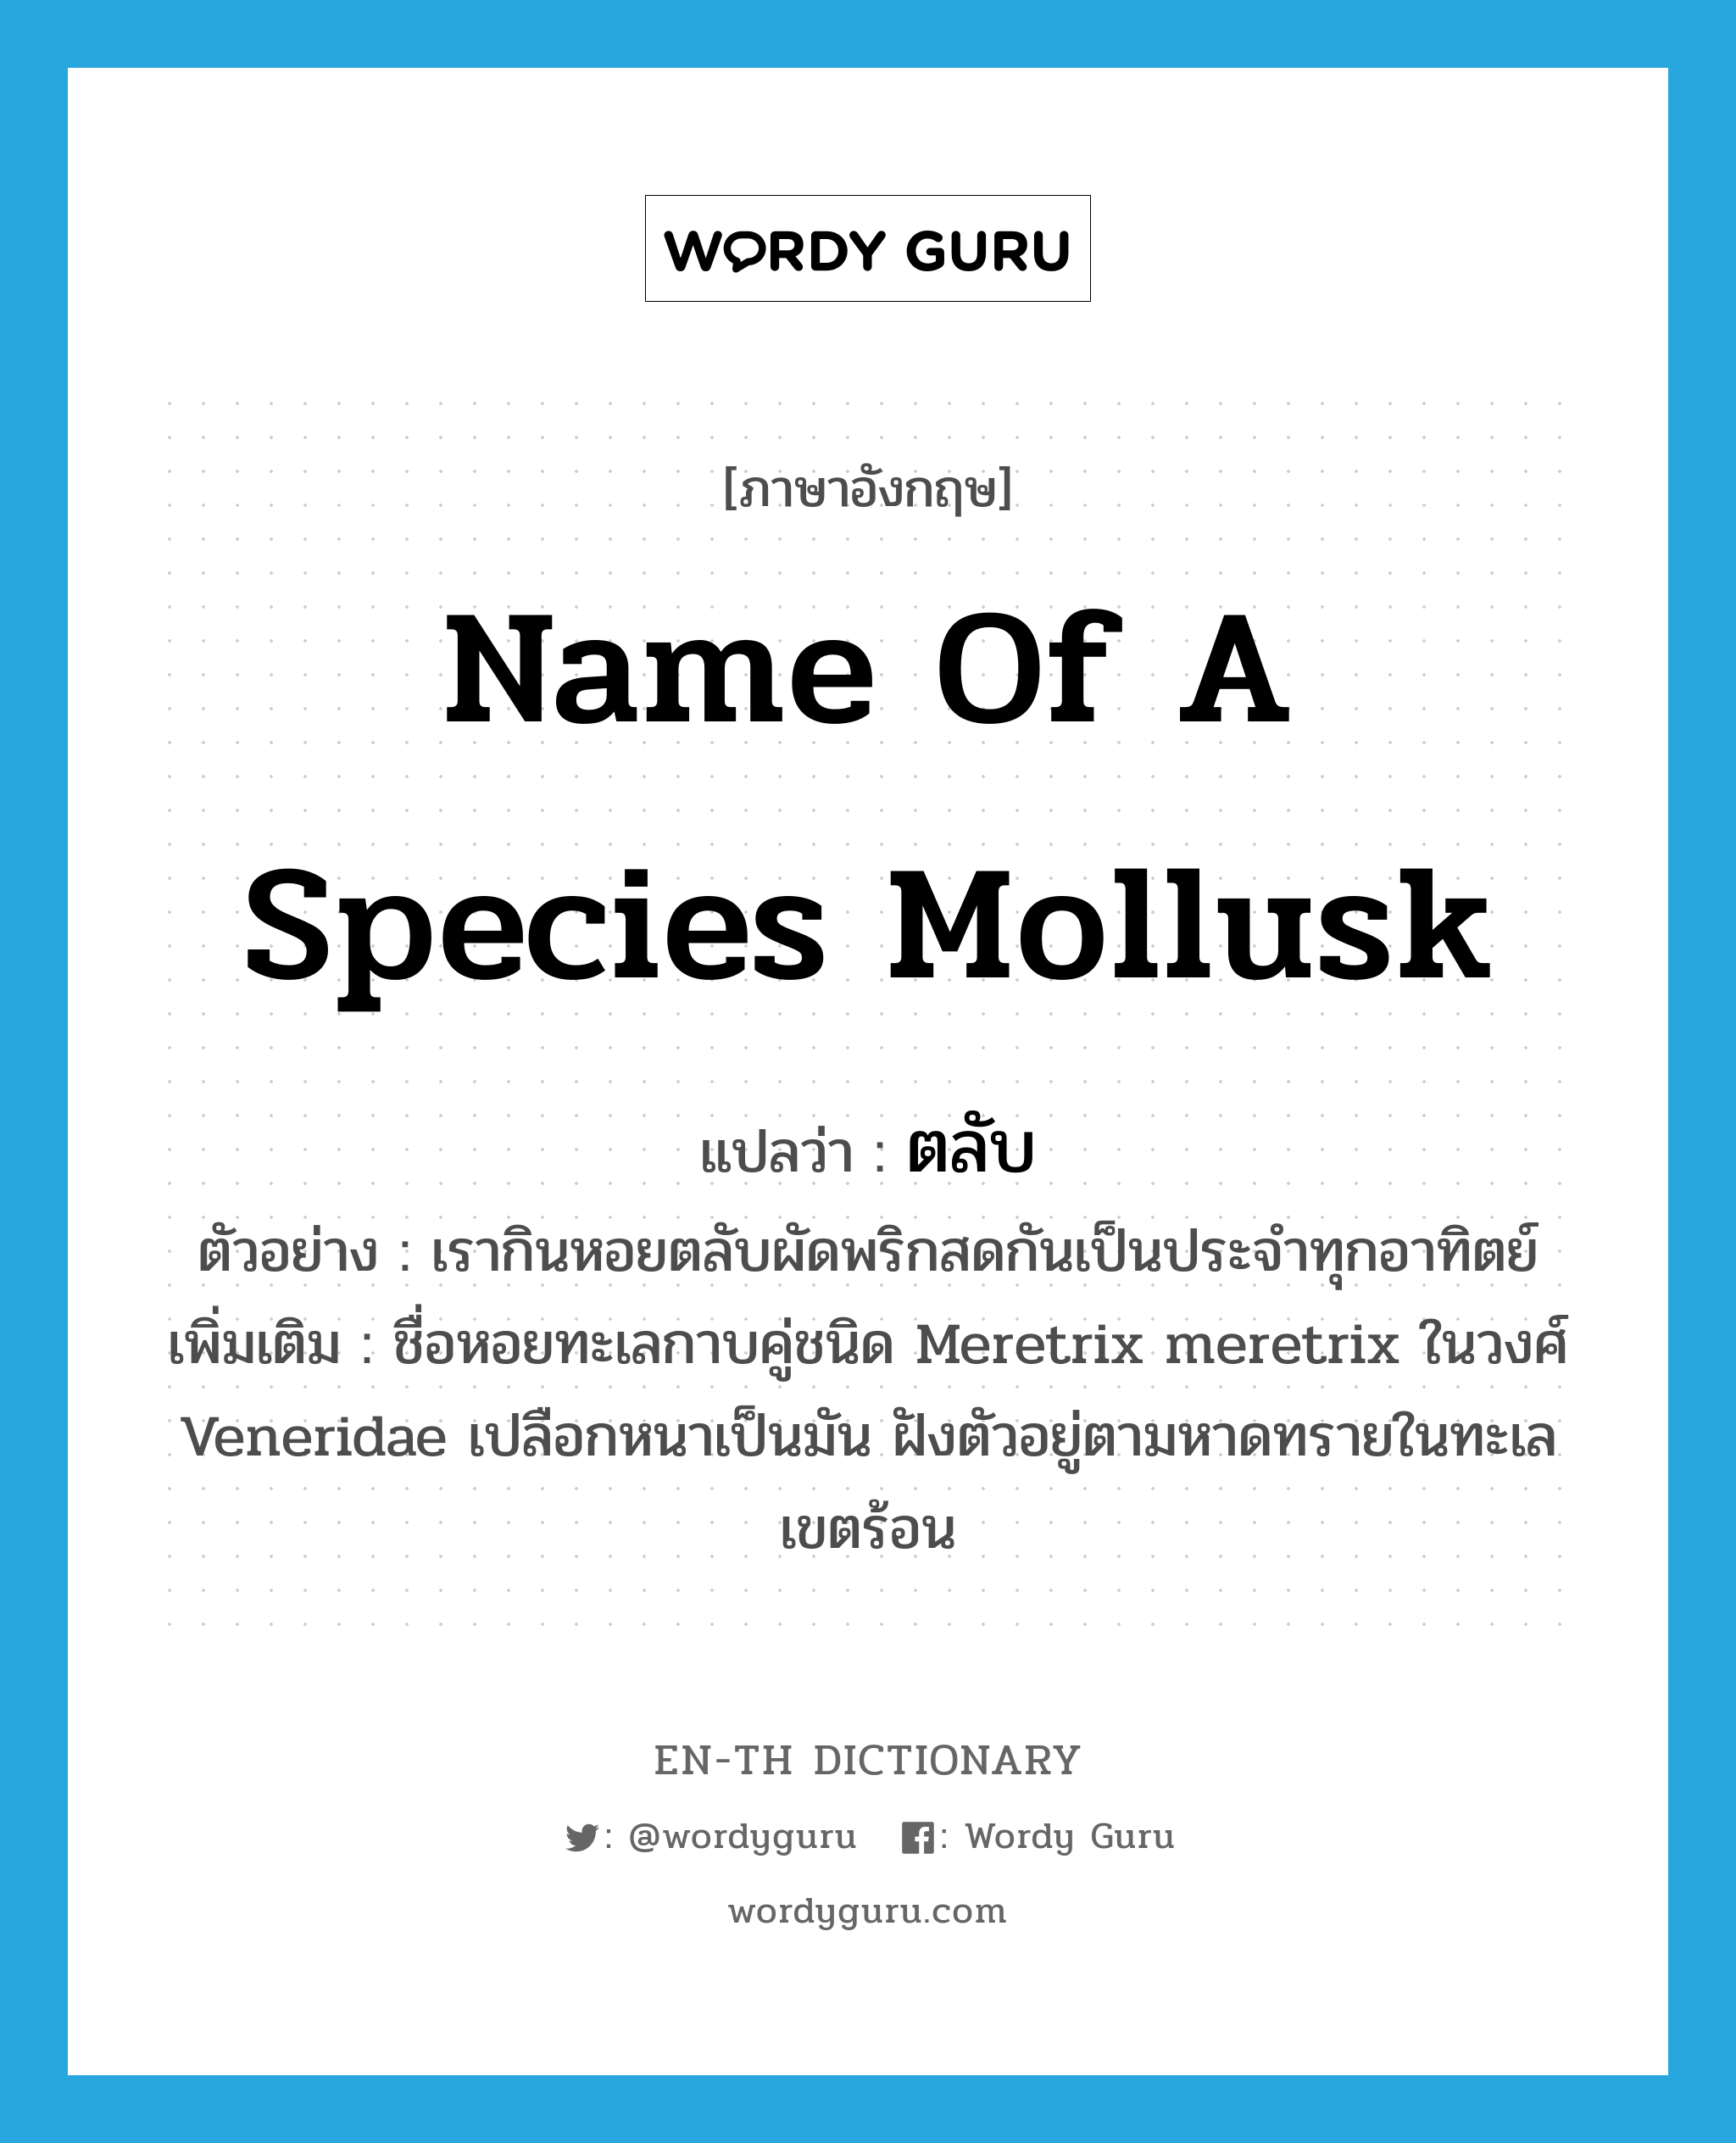 name of a species mollusk แปลว่า?, คำศัพท์ภาษาอังกฤษ name of a species mollusk แปลว่า ตลับ ประเภท N ตัวอย่าง เรากินหอยตลับผัดพริกสดกันเป็นประจำทุกอาทิตย์ เพิ่มเติม ชื่อหอยทะเลกาบคู่ชนิด Meretrix meretrix ในวงศ์ Veneridae เปลือกหนาเป็นมัน ฝังตัวอยู่ตามหาดทรายในทะเลเขตร้อน หมวด N